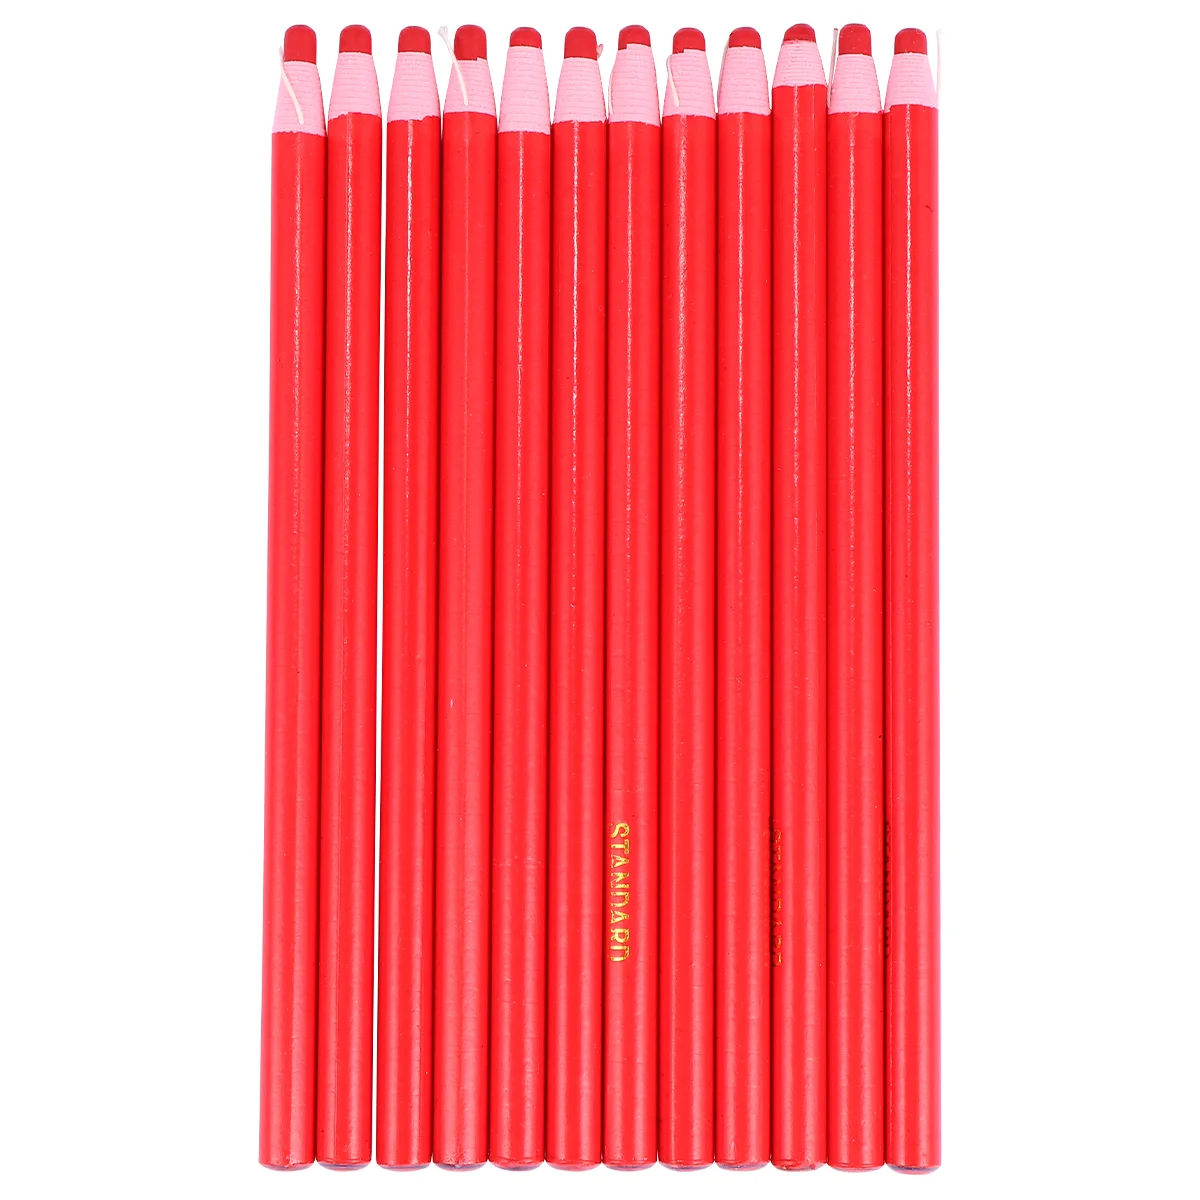 

Маркерная смазка от шелухи китайская Ручка восковые карандаши маркировочные карандаши для шитья маркеры для рисования мелки для ткани Кор...